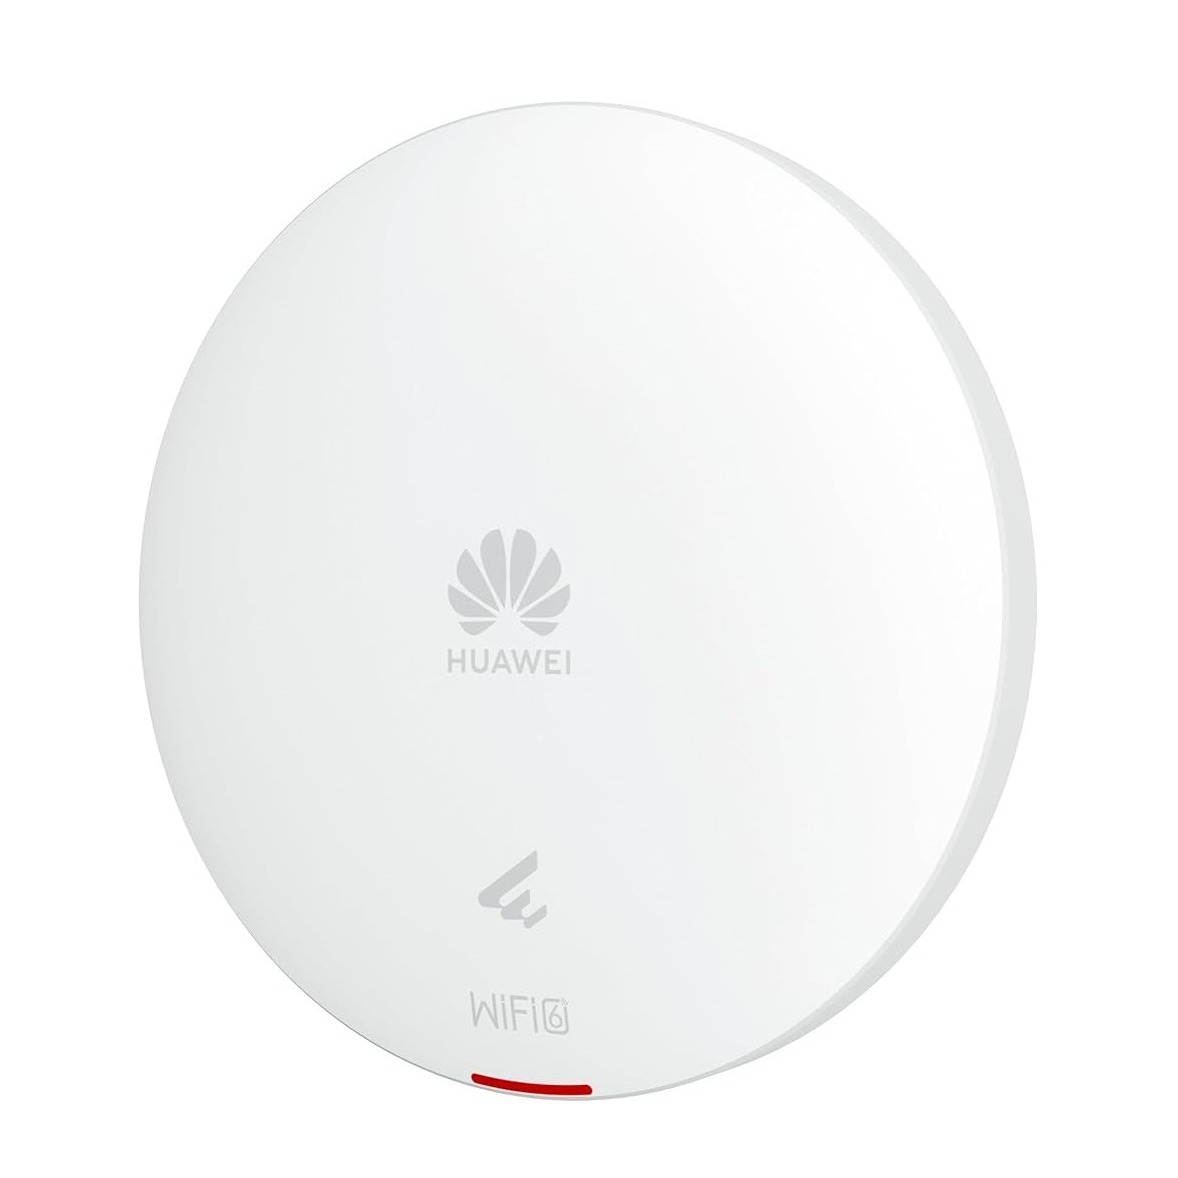 Huawei AP362 (50085706),Settled AP, Wi-Fi 6, indoor, Dual Radio(2.4G/5GHz), 2*2/2*2 MU-MIMO